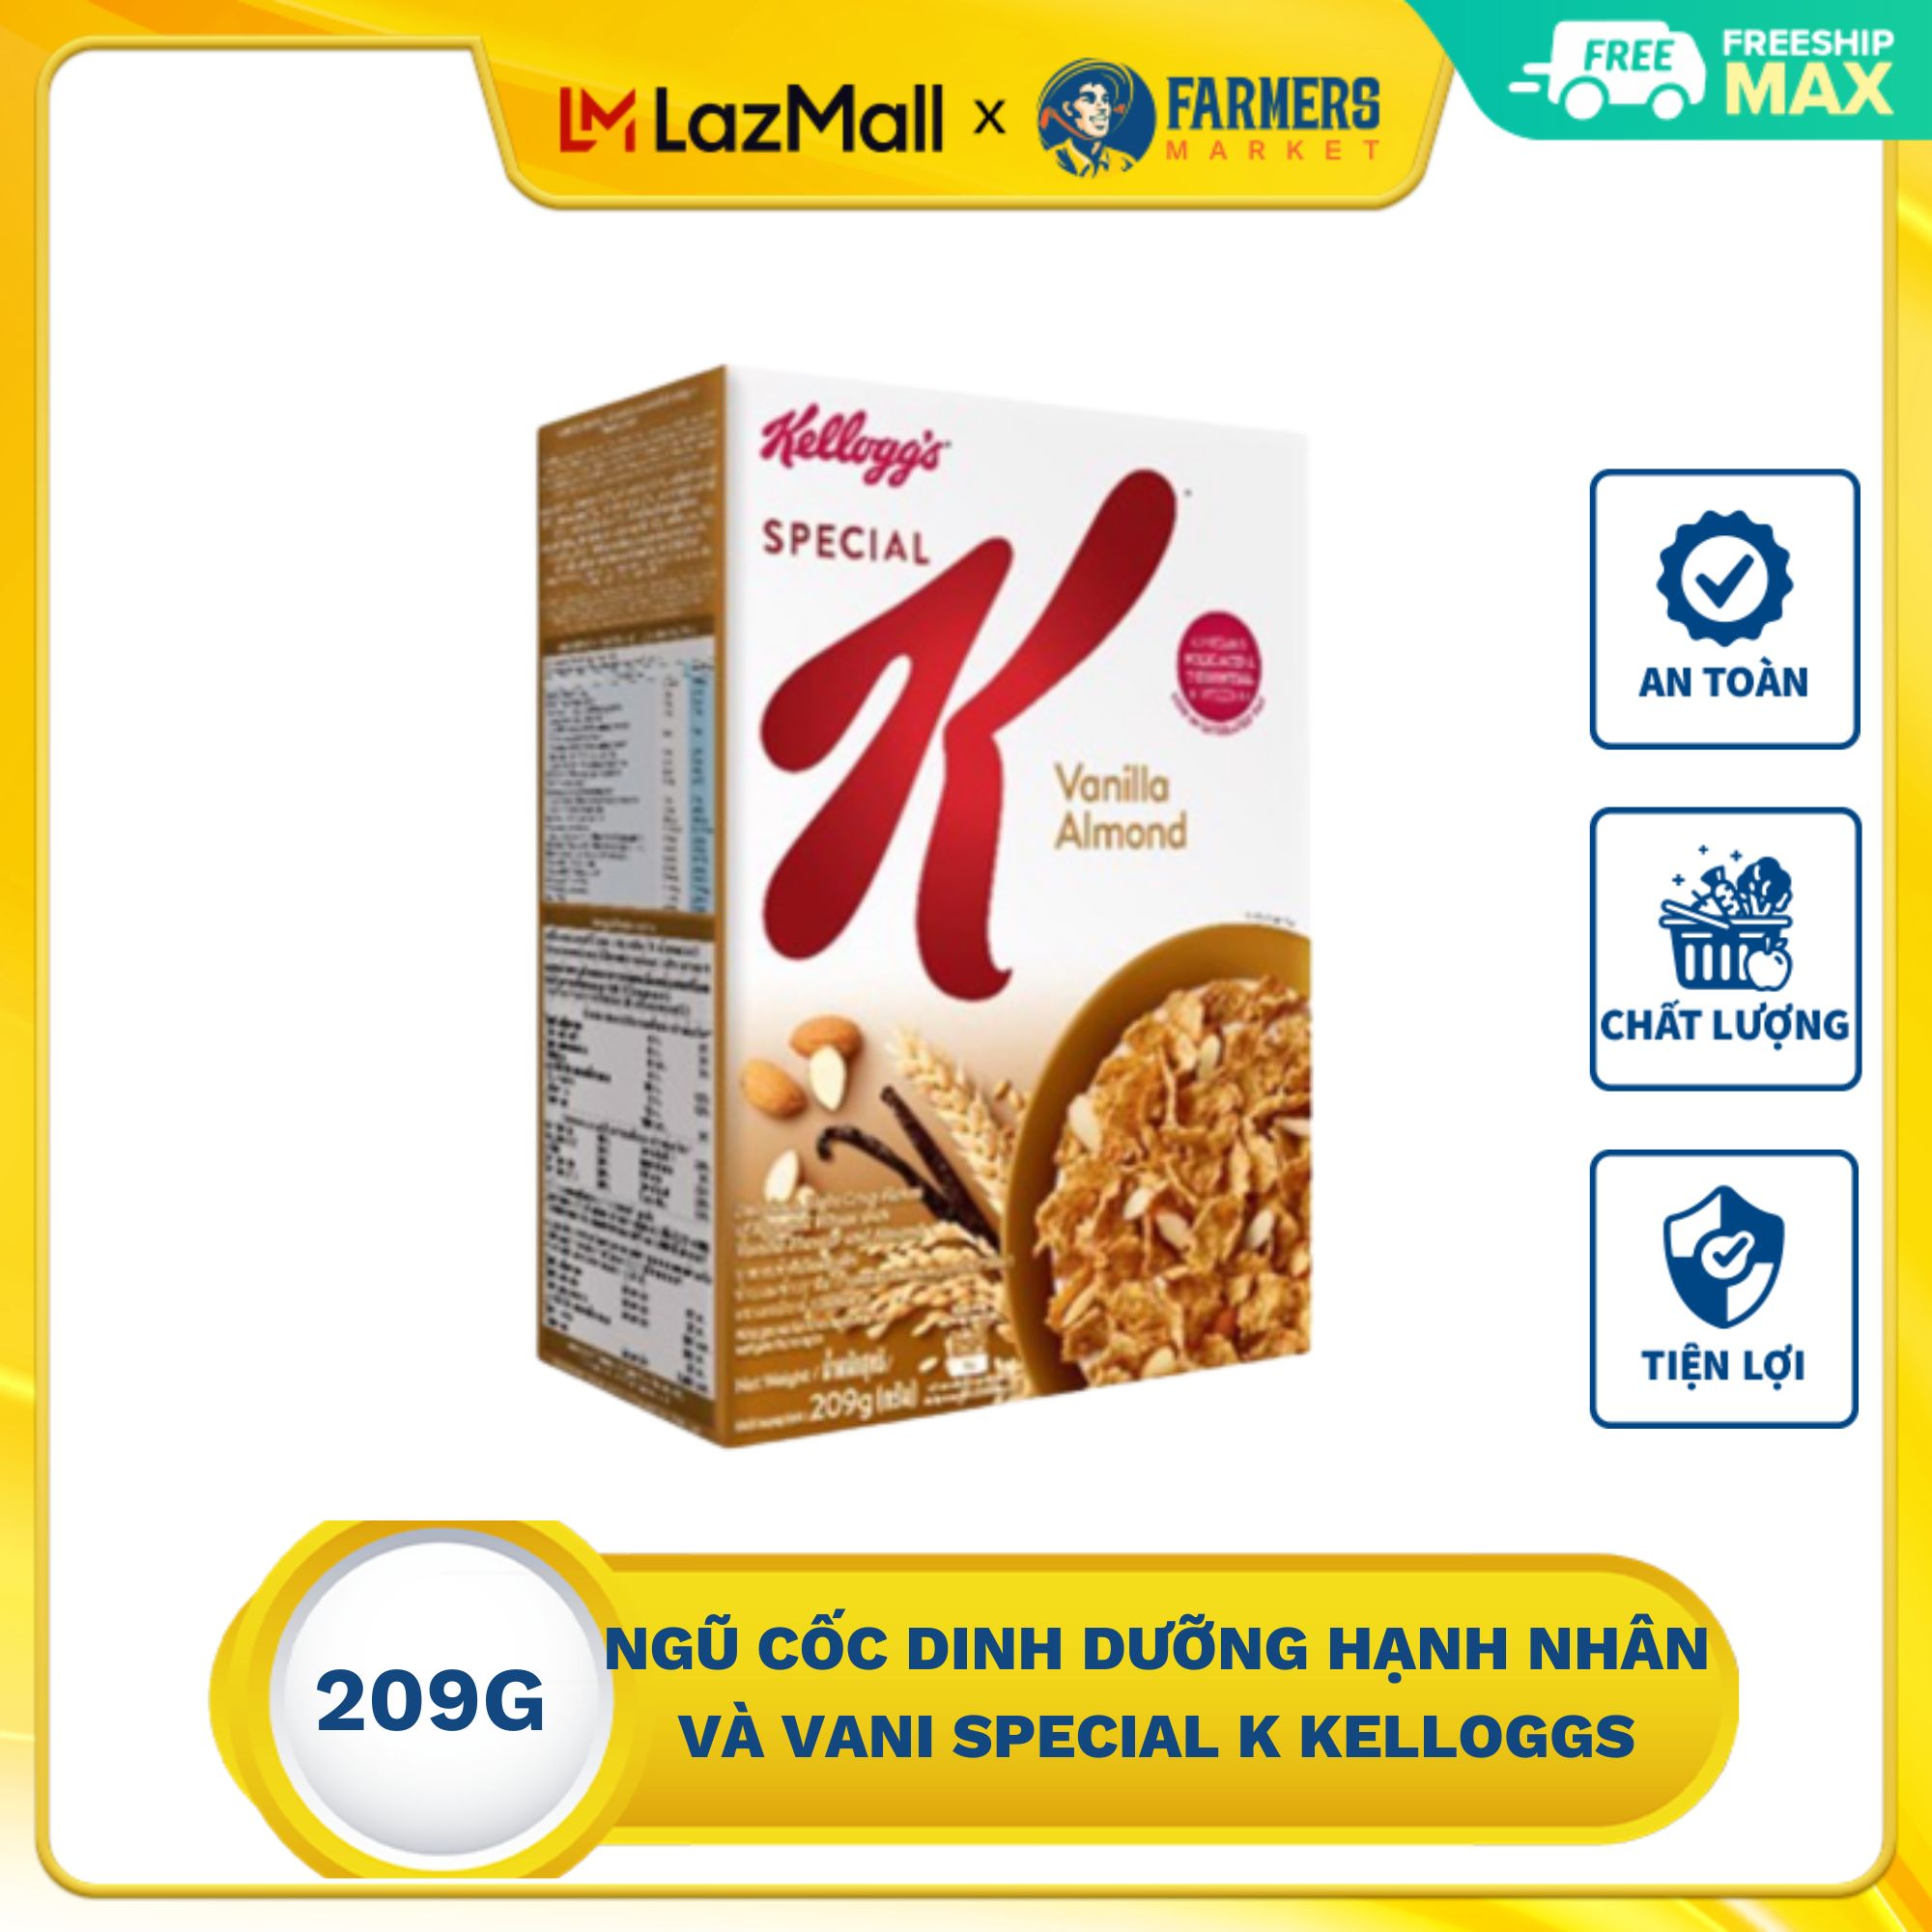 Ngũ cốc dinh dưỡng hạnh nhân và vani Special K Kelloggs 209g giàu vitamin D